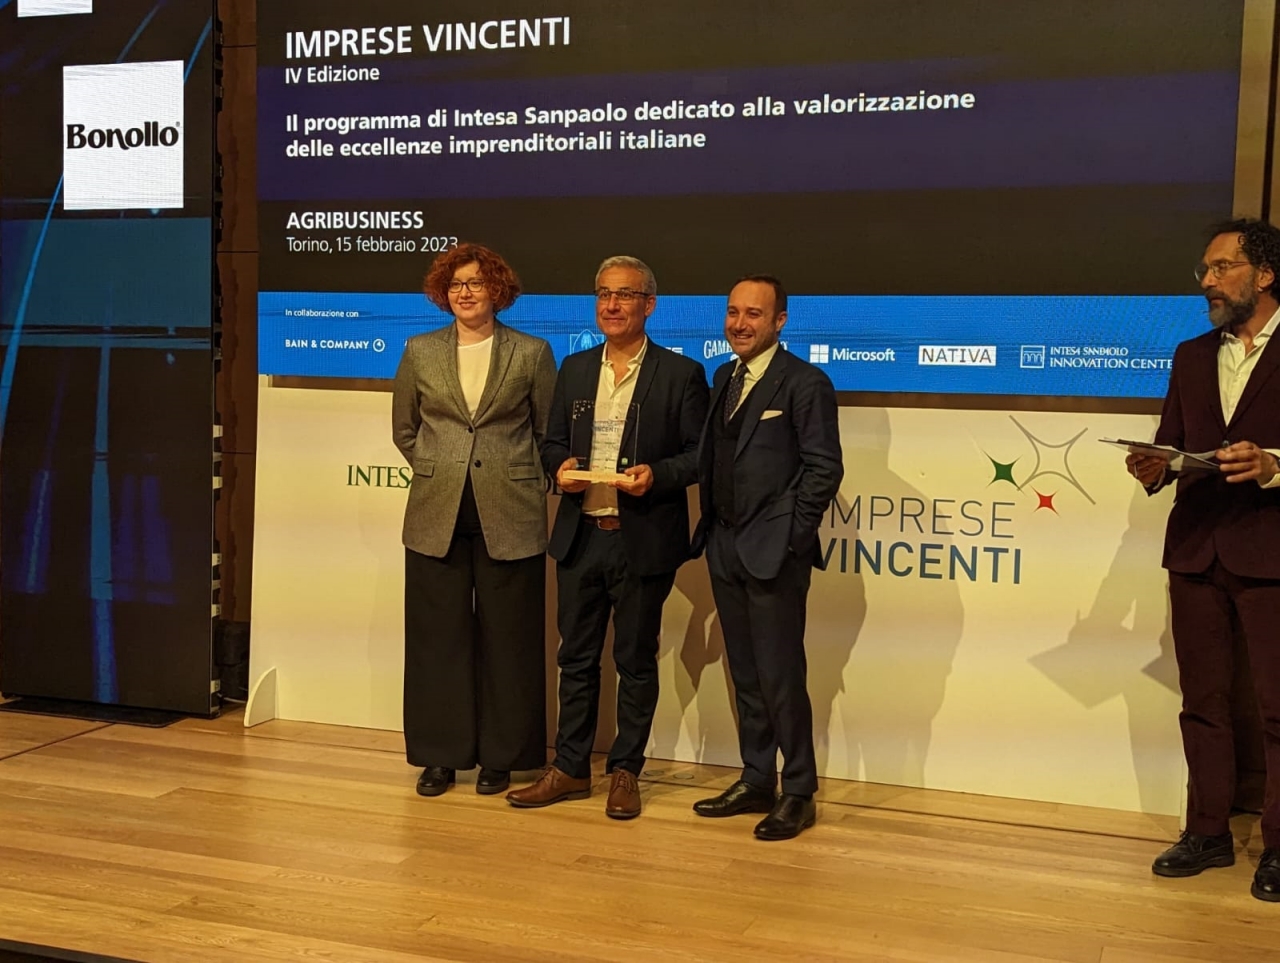 Agroalimentare, Fattoria della Piana tra le dieci “Imprese Vincenti” italiane